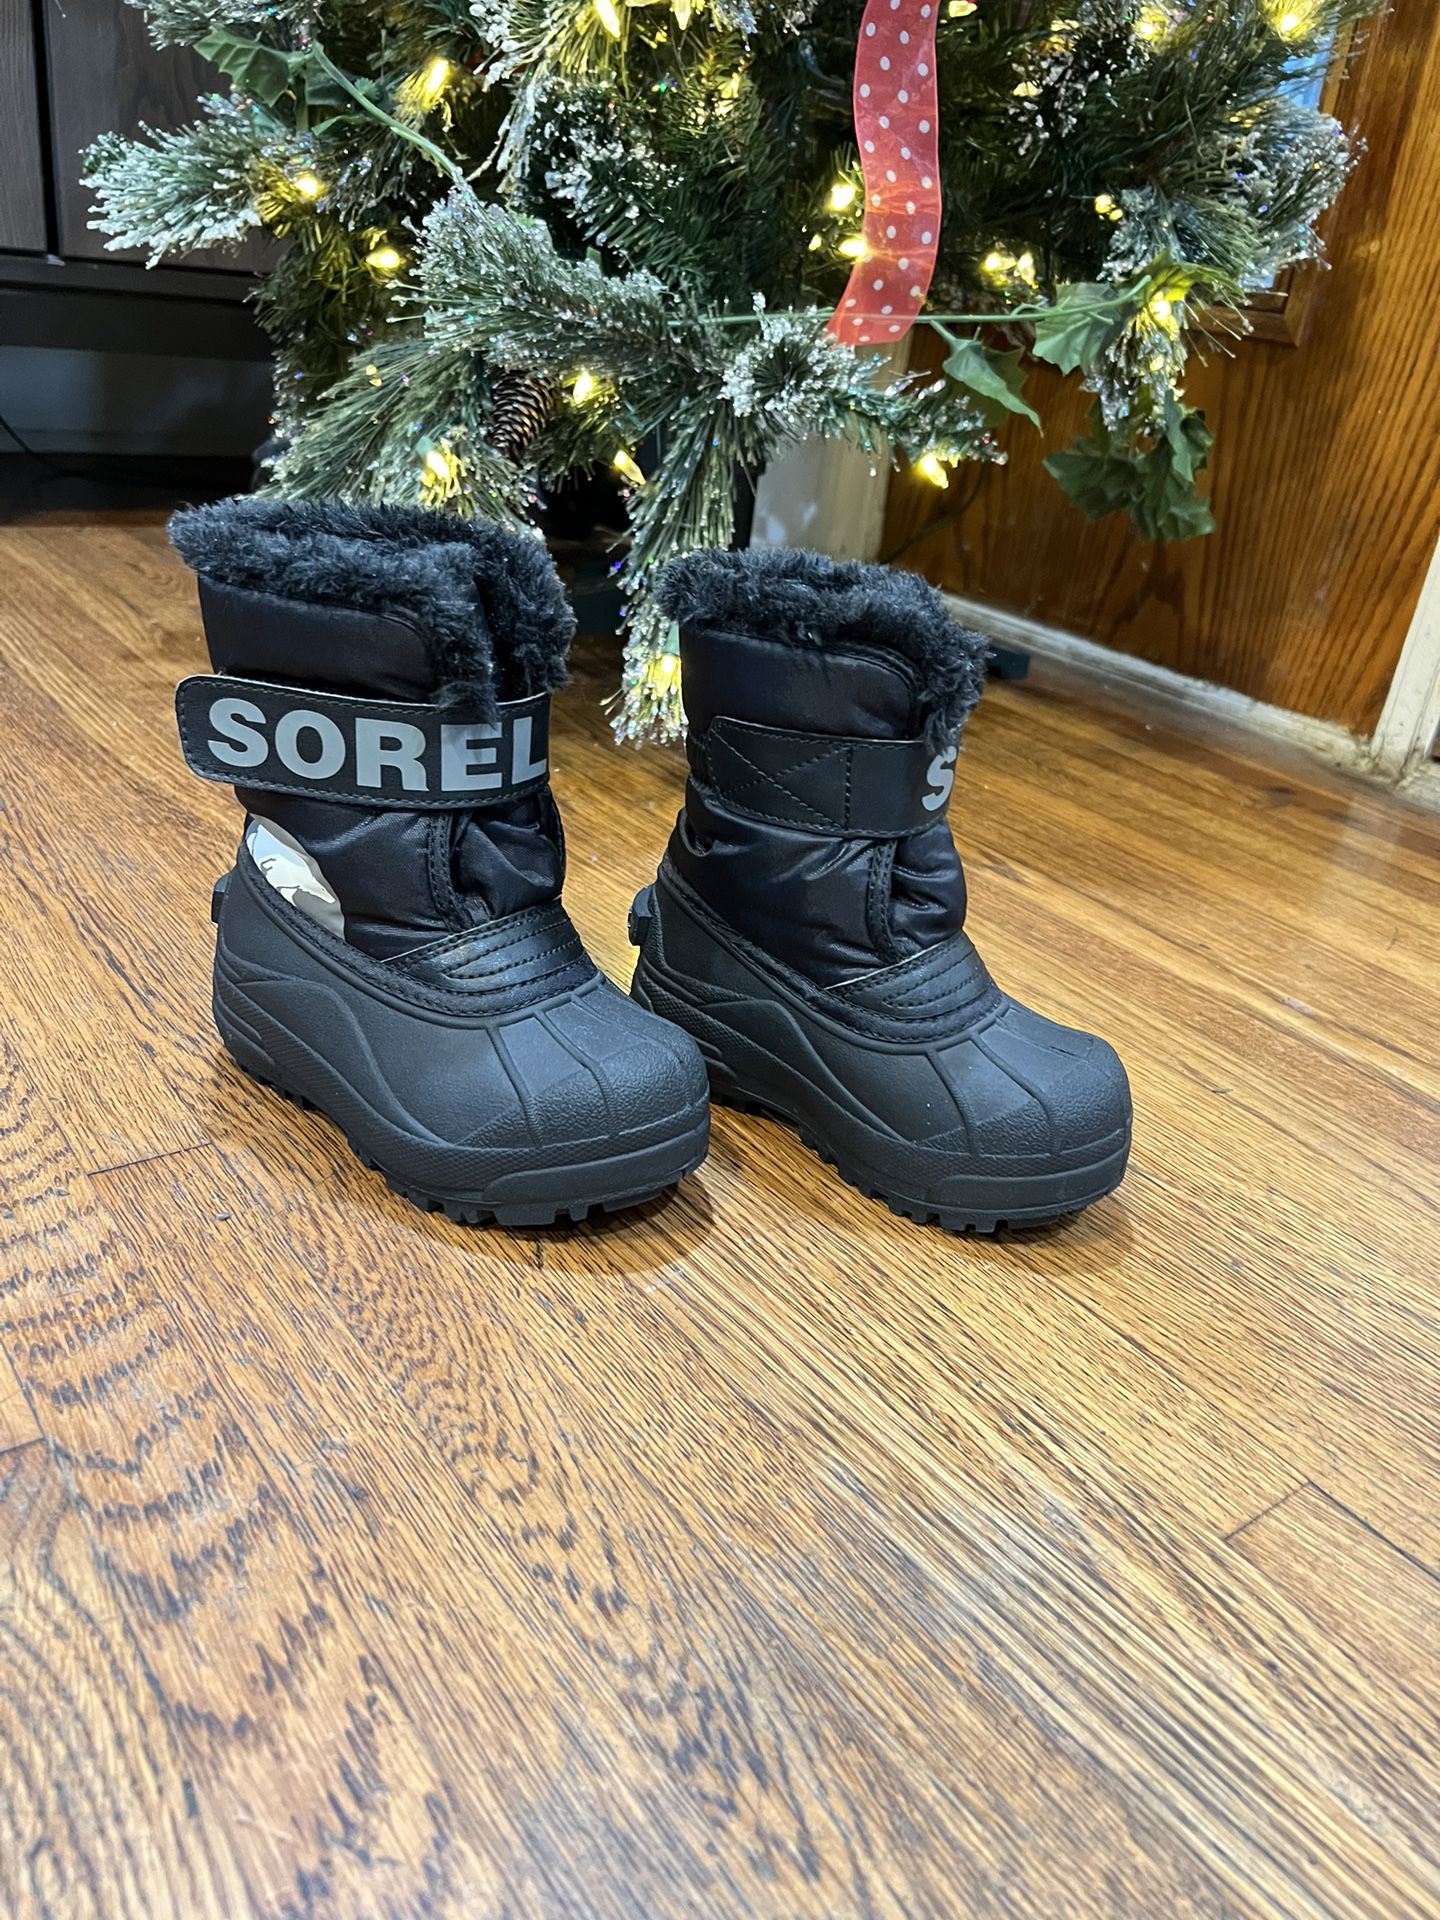 Oven vrouwelijk Bliksem Sorel Commander Toddler Boy Or Girl Snow Boots for Sale in Inglewood, CA -  OfferUp